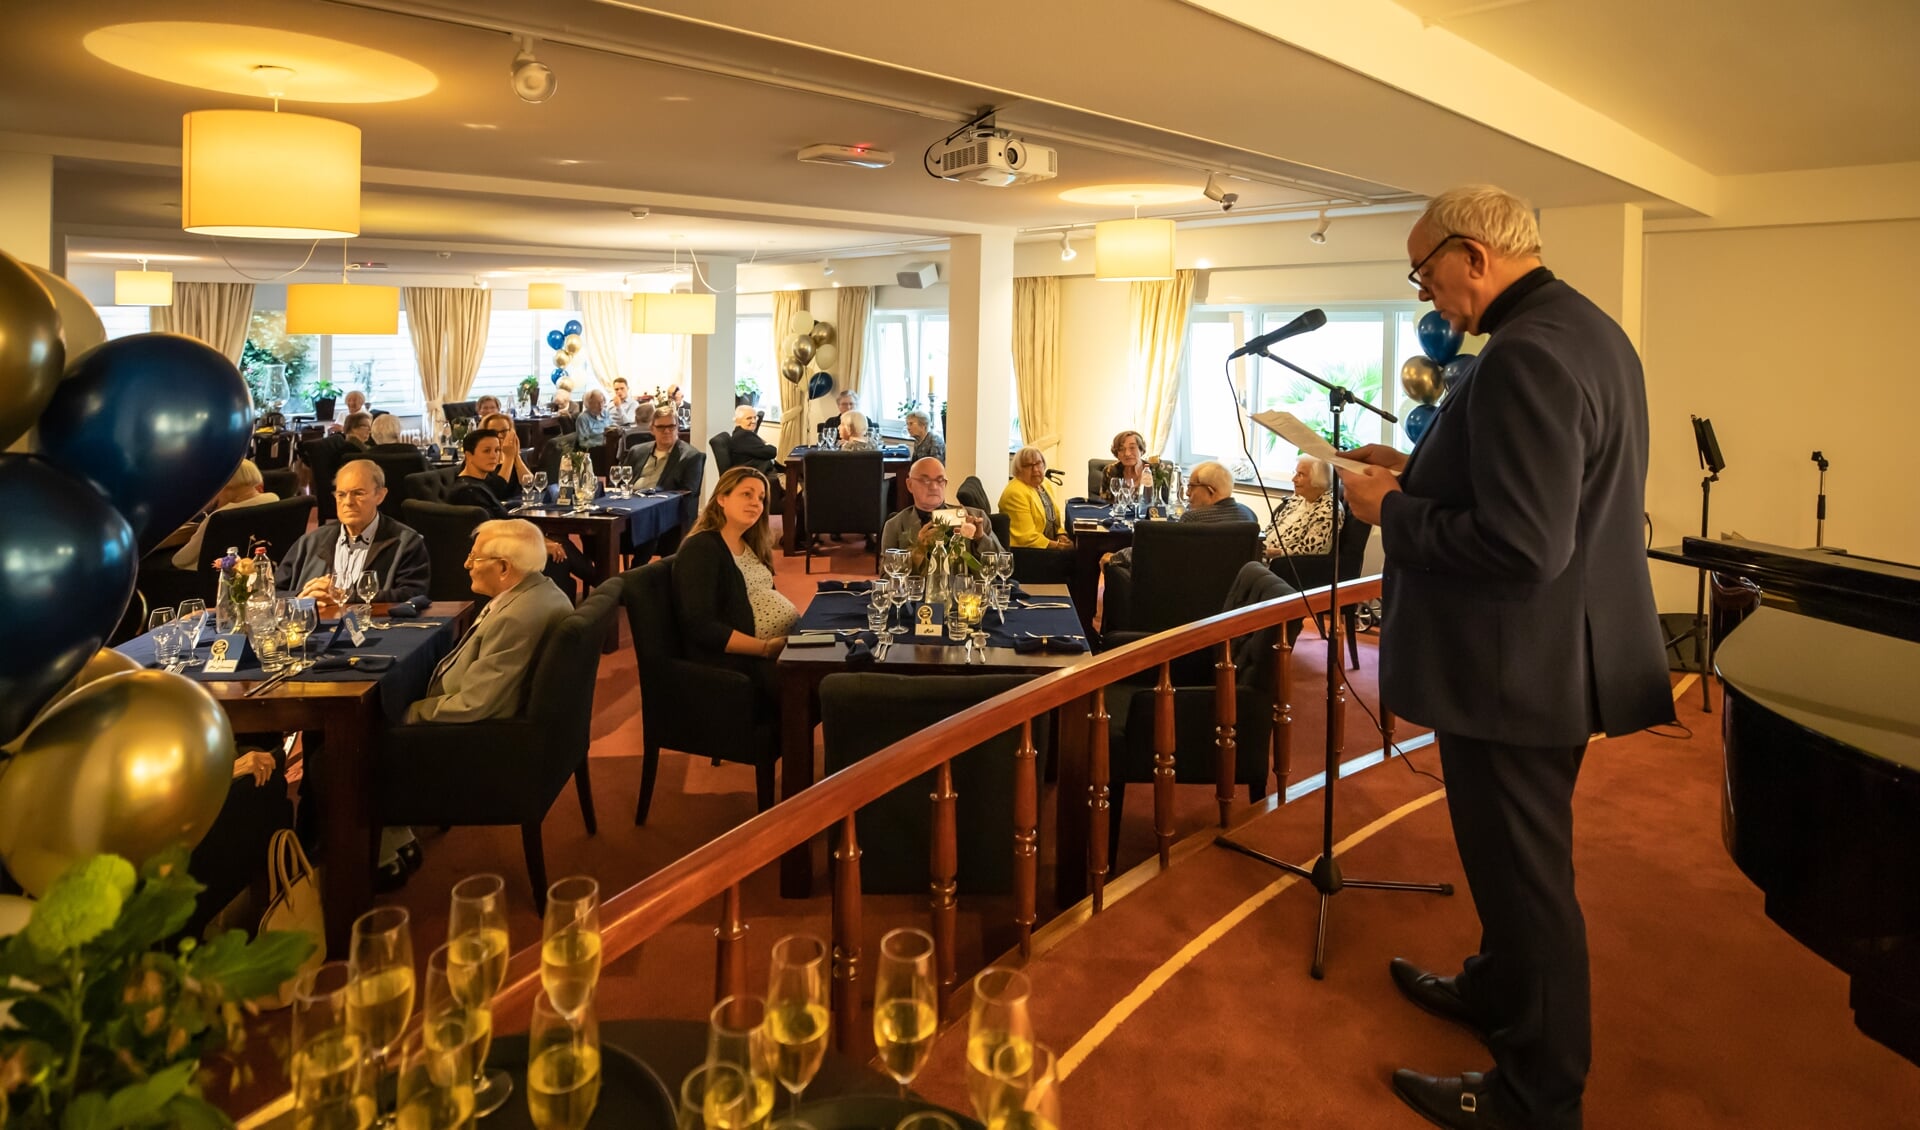 Na een toespraak, door Joke van ’t Klooster en Rob Kroes waarin de geschiedenis van Brandsen werd doorgenomen, volgde een champagne toost en opvolgend een diner.